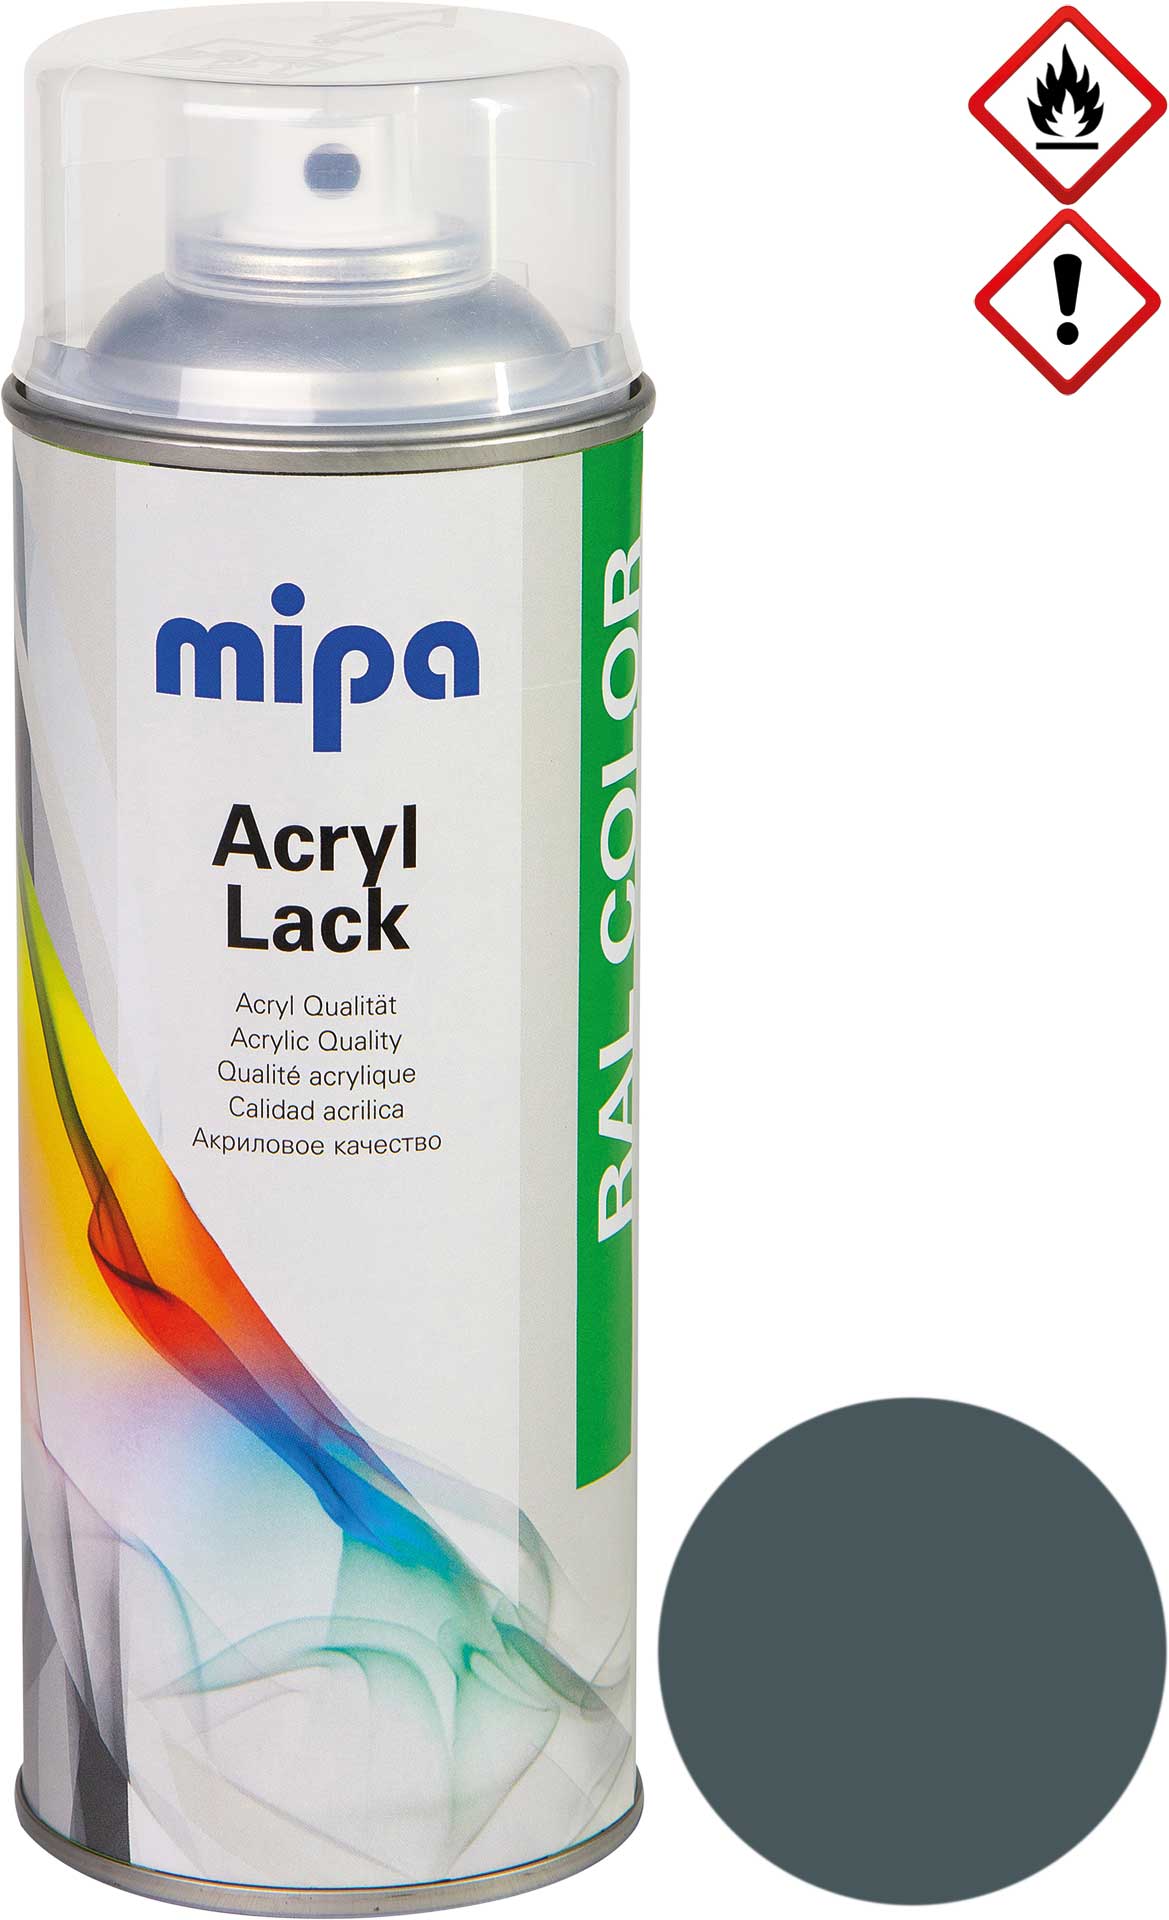 mipa RAL 7011 Iron grey 1K-Acrylic Lacquer spray 400 ml